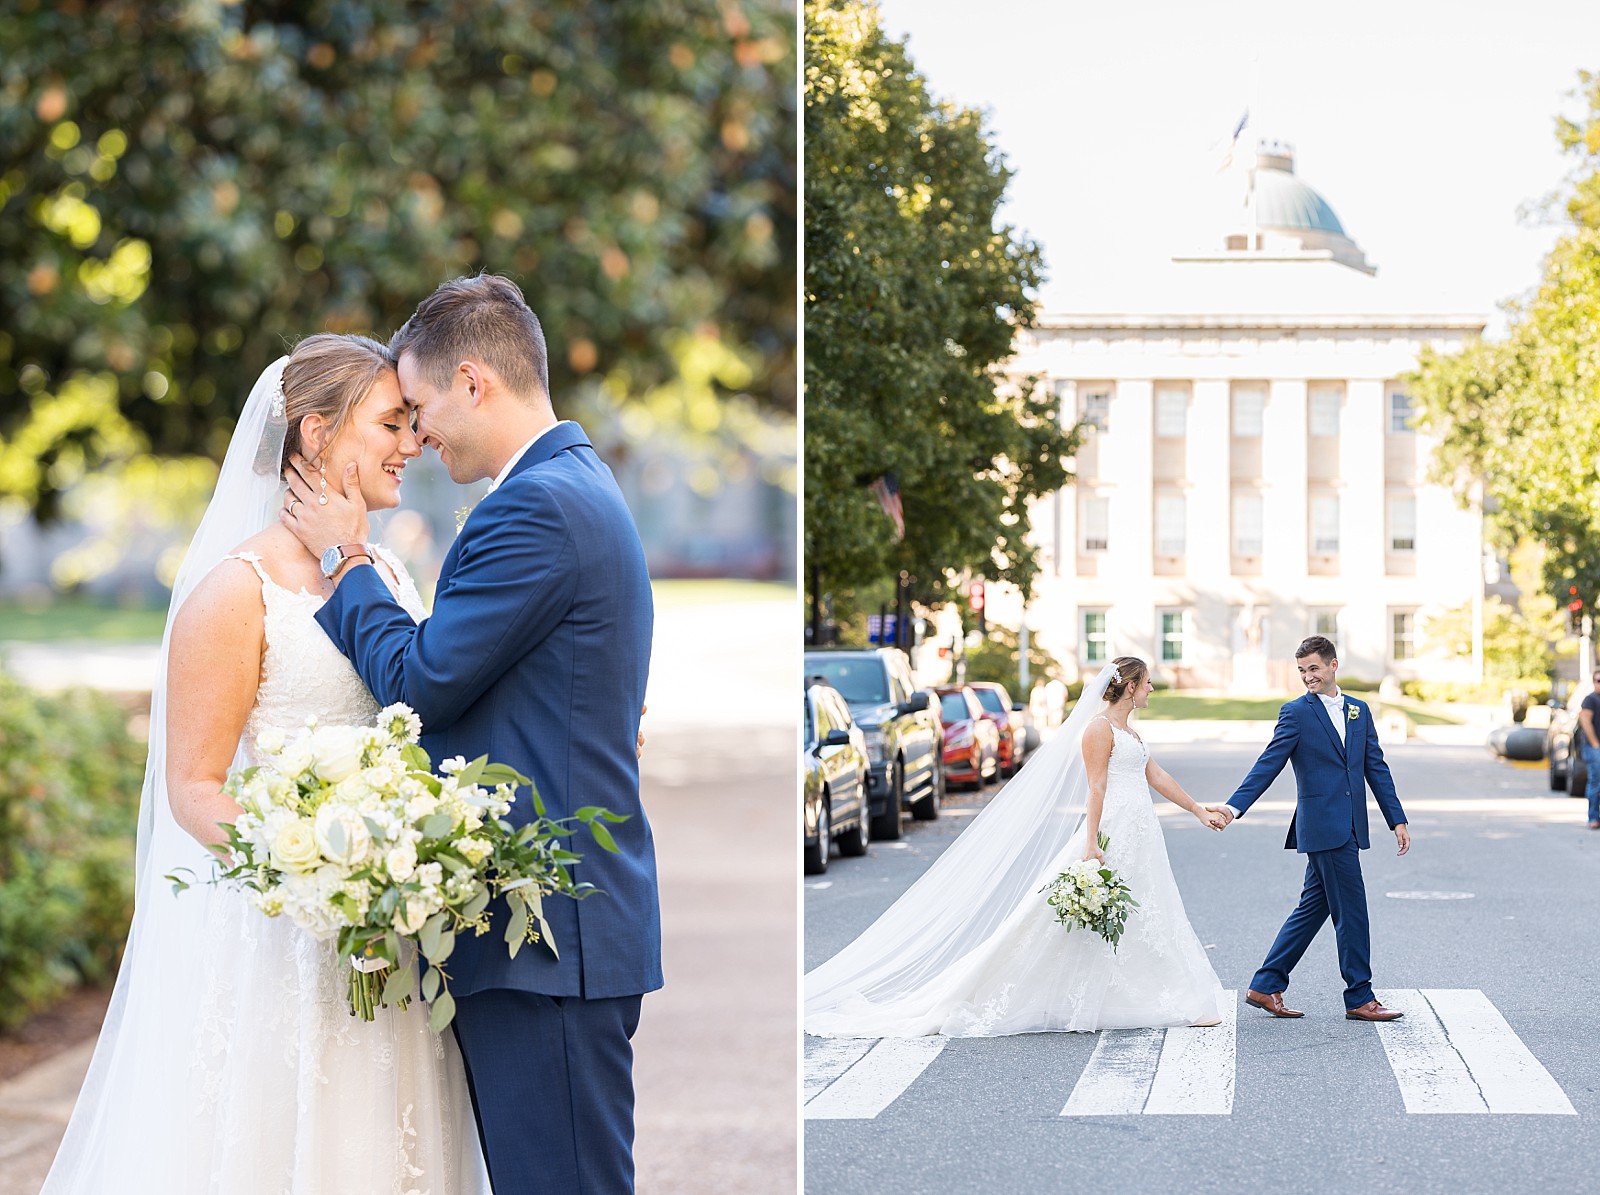 Downtown Raleigh wedding photos | Raleigh Wedding Photographer Sarah Hinckley